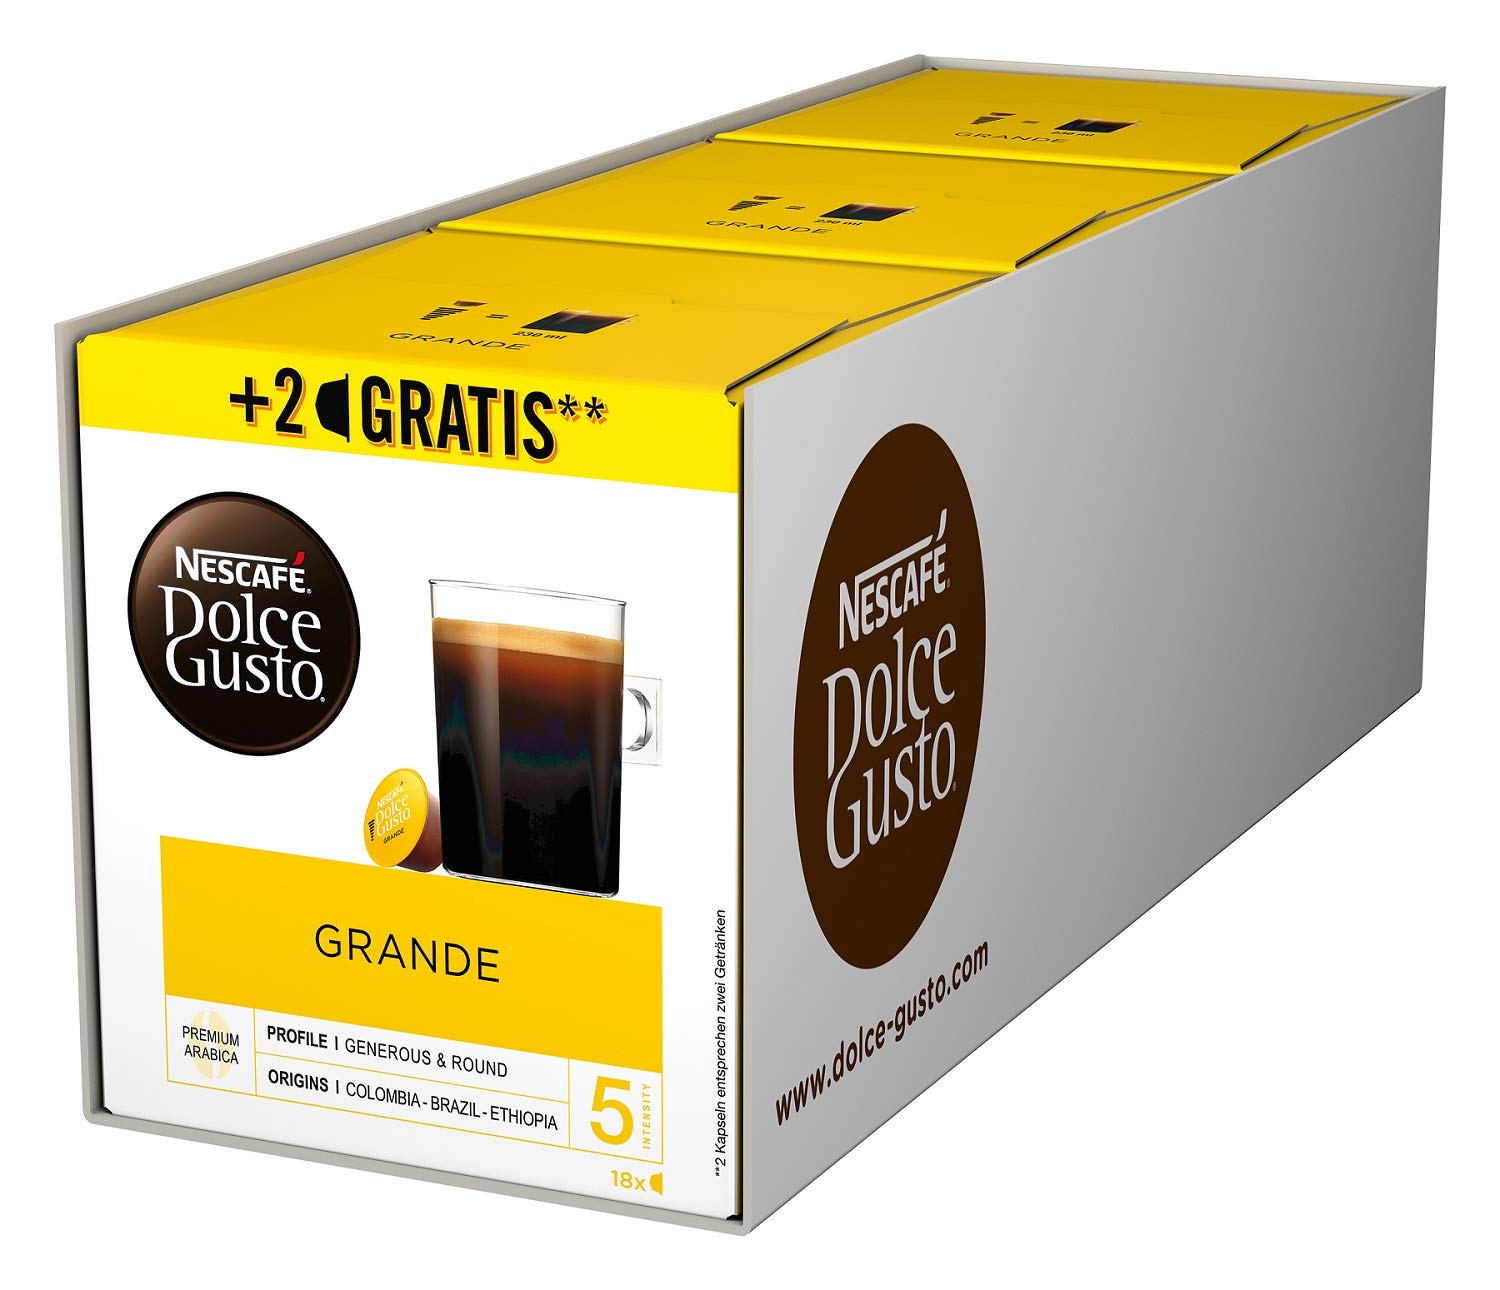 NESCAFÉ Dolce Gusto Grande Kaffee 54 Kaffeekapseln (100% Arabica Bohnen, Feine Crema und kräftiges Aroma, Schnelle Zubereitung, Aromaversiegelte Kapseln) 3er Pack (3 x 16 + 2 Kapseln)